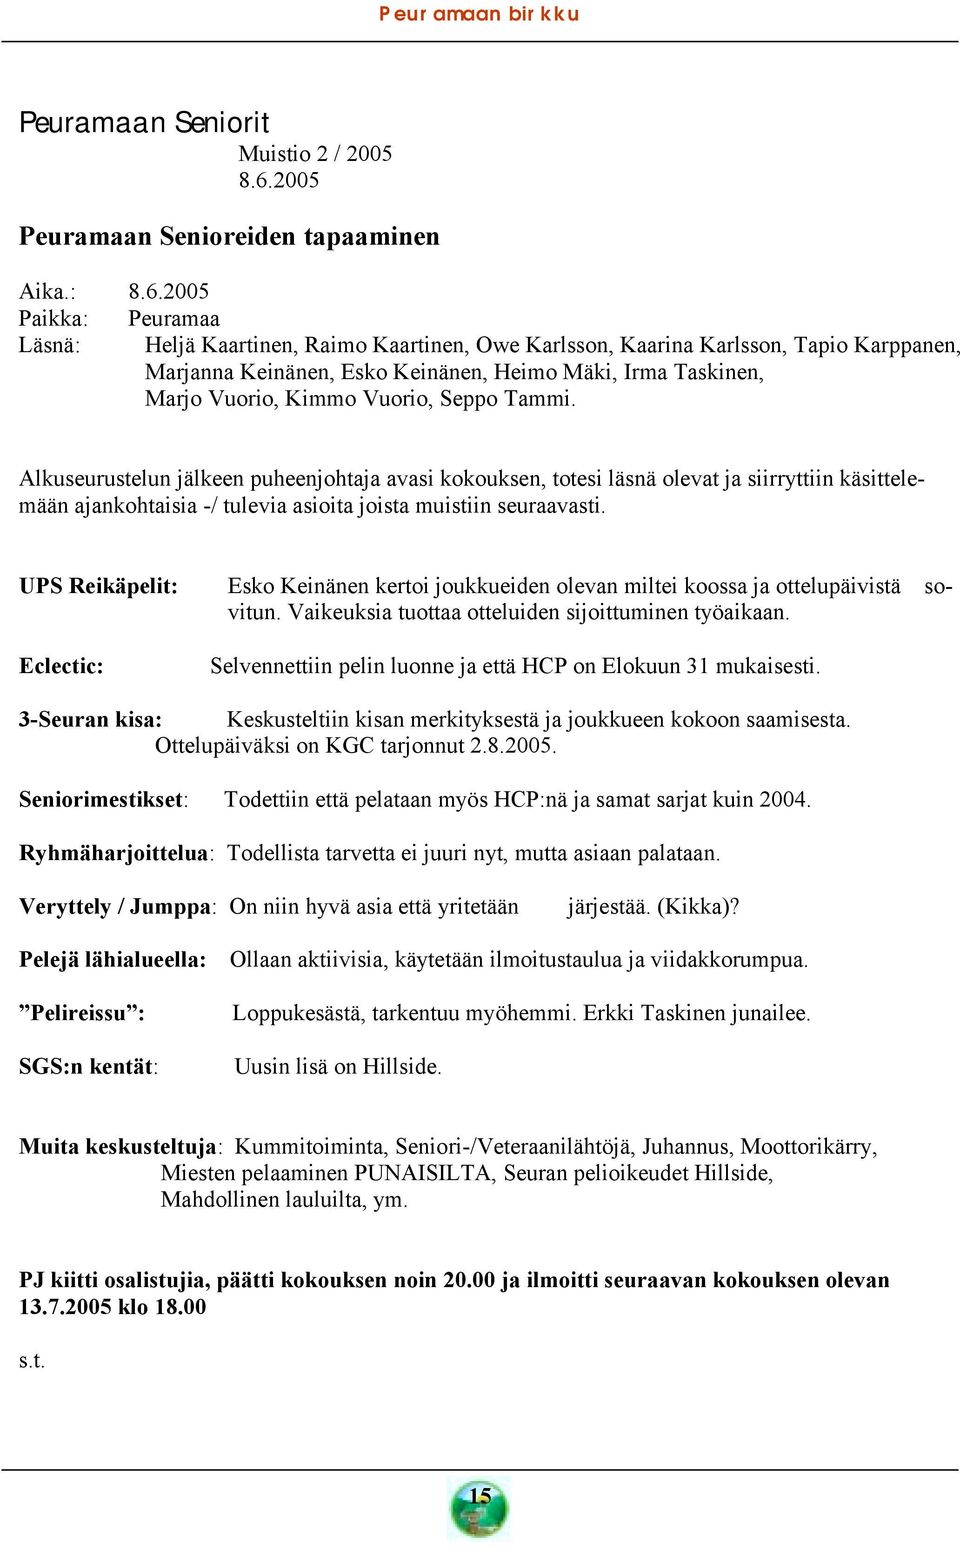 2005 Paikka: Peuramaa Läsnä: Heljä Kaartinen, Raimo Kaartinen, Owe Karlsson, Kaarina Karlsson, Tapio Karppanen, Marjanna Keinänen, Esko Keinänen, Heimo Mäki, Irma Taskinen, Marjo Vuorio, Kimmo